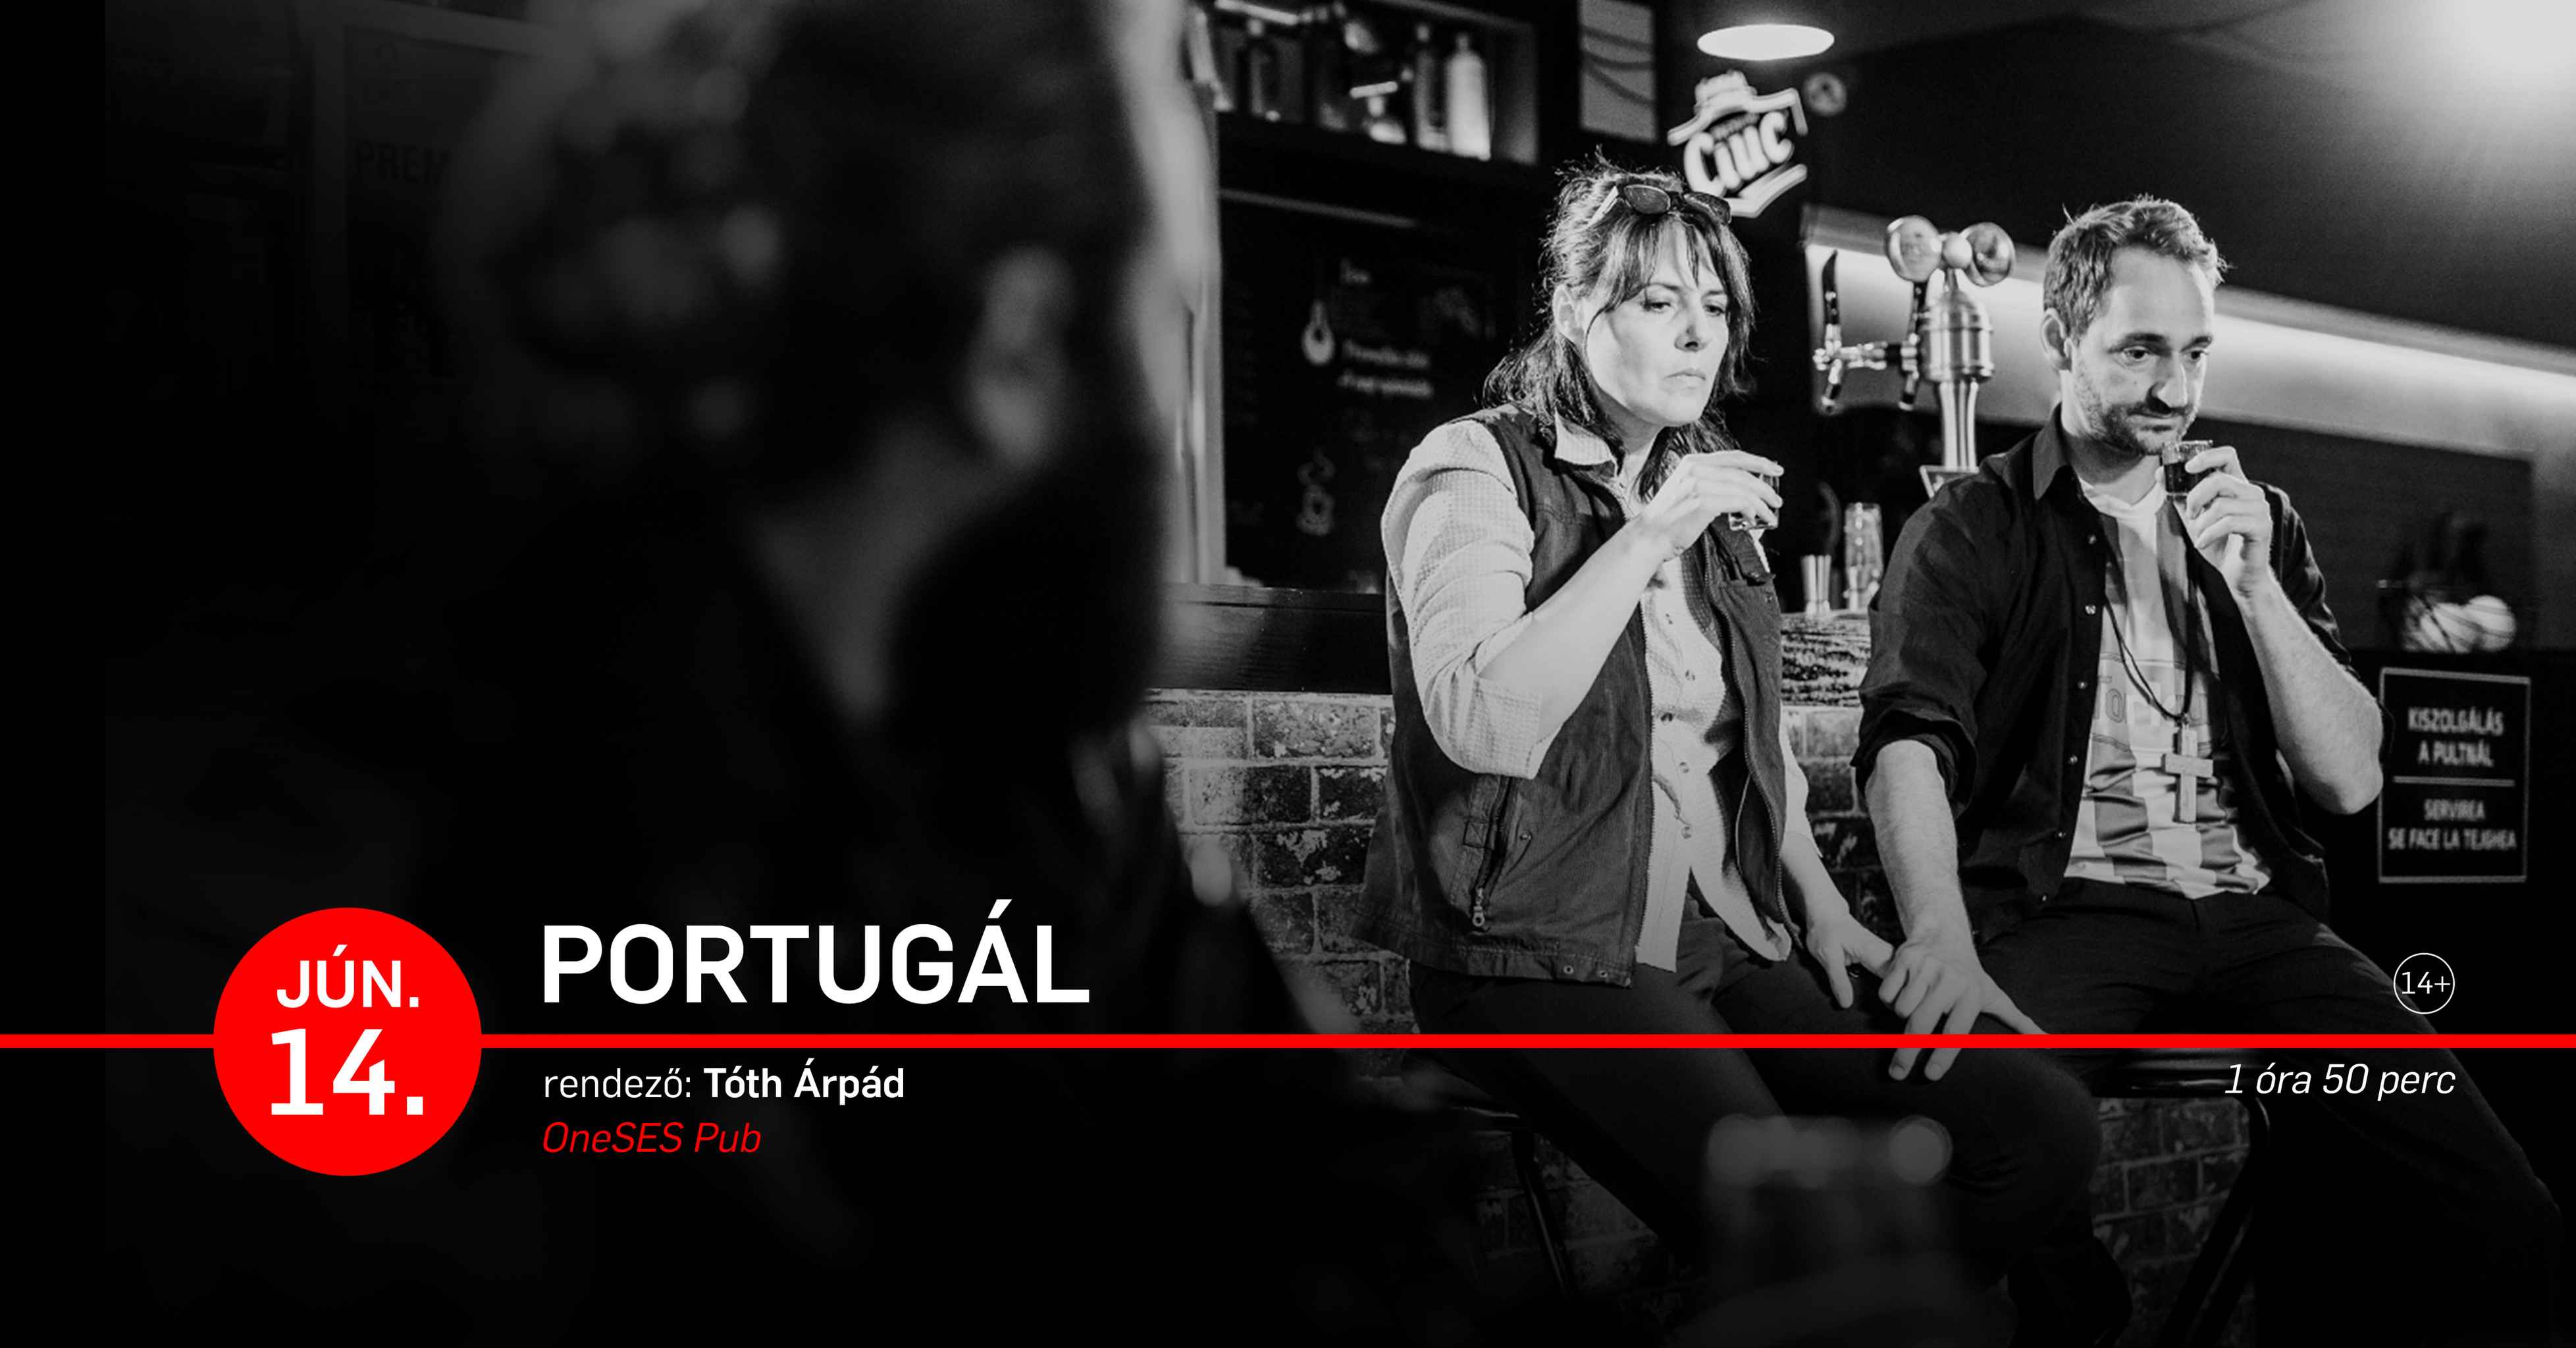 Portugál | Kocsmaszínházi előadás